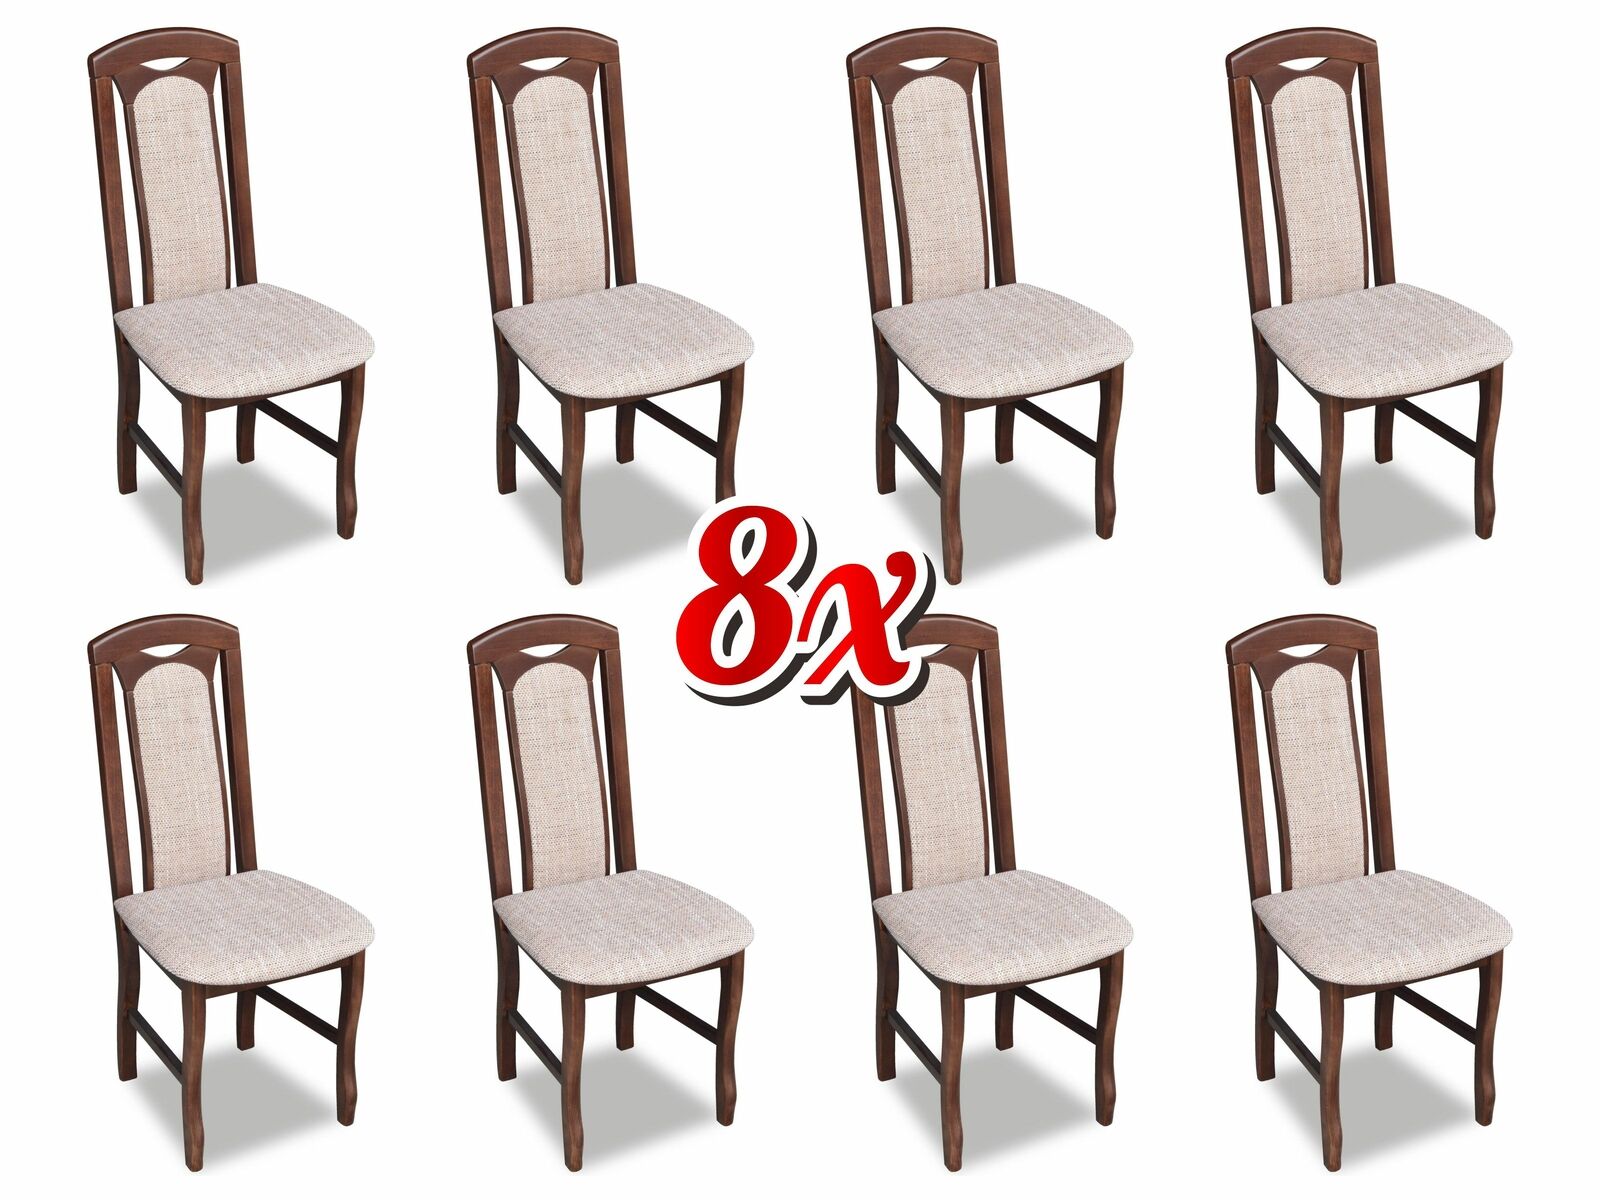 Garnitur Stuhl 8x Esszimmer Polsterstuhl Lounge Club Textil Stühle Küche Set Neu